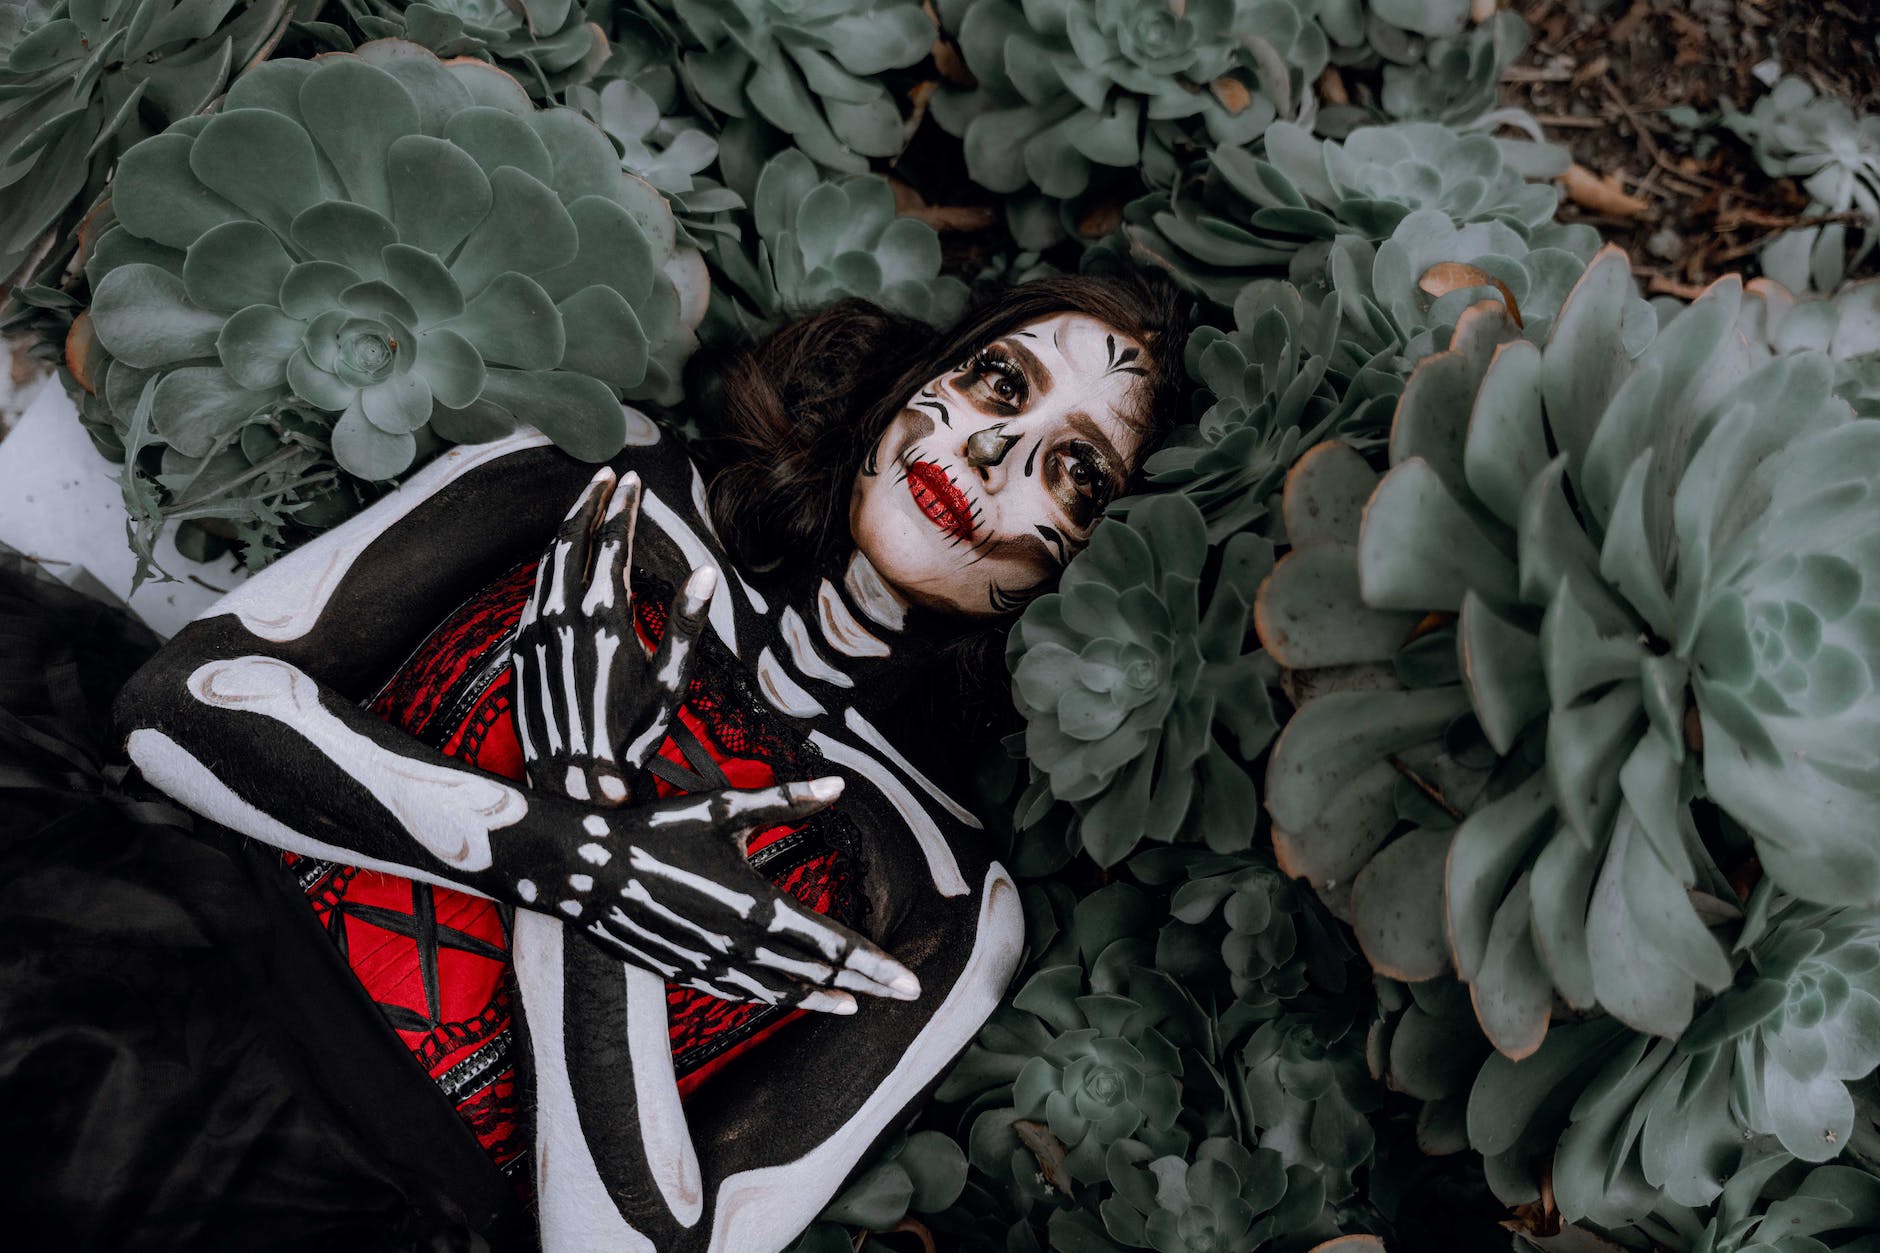 woman wearing halloween costume lying among plants